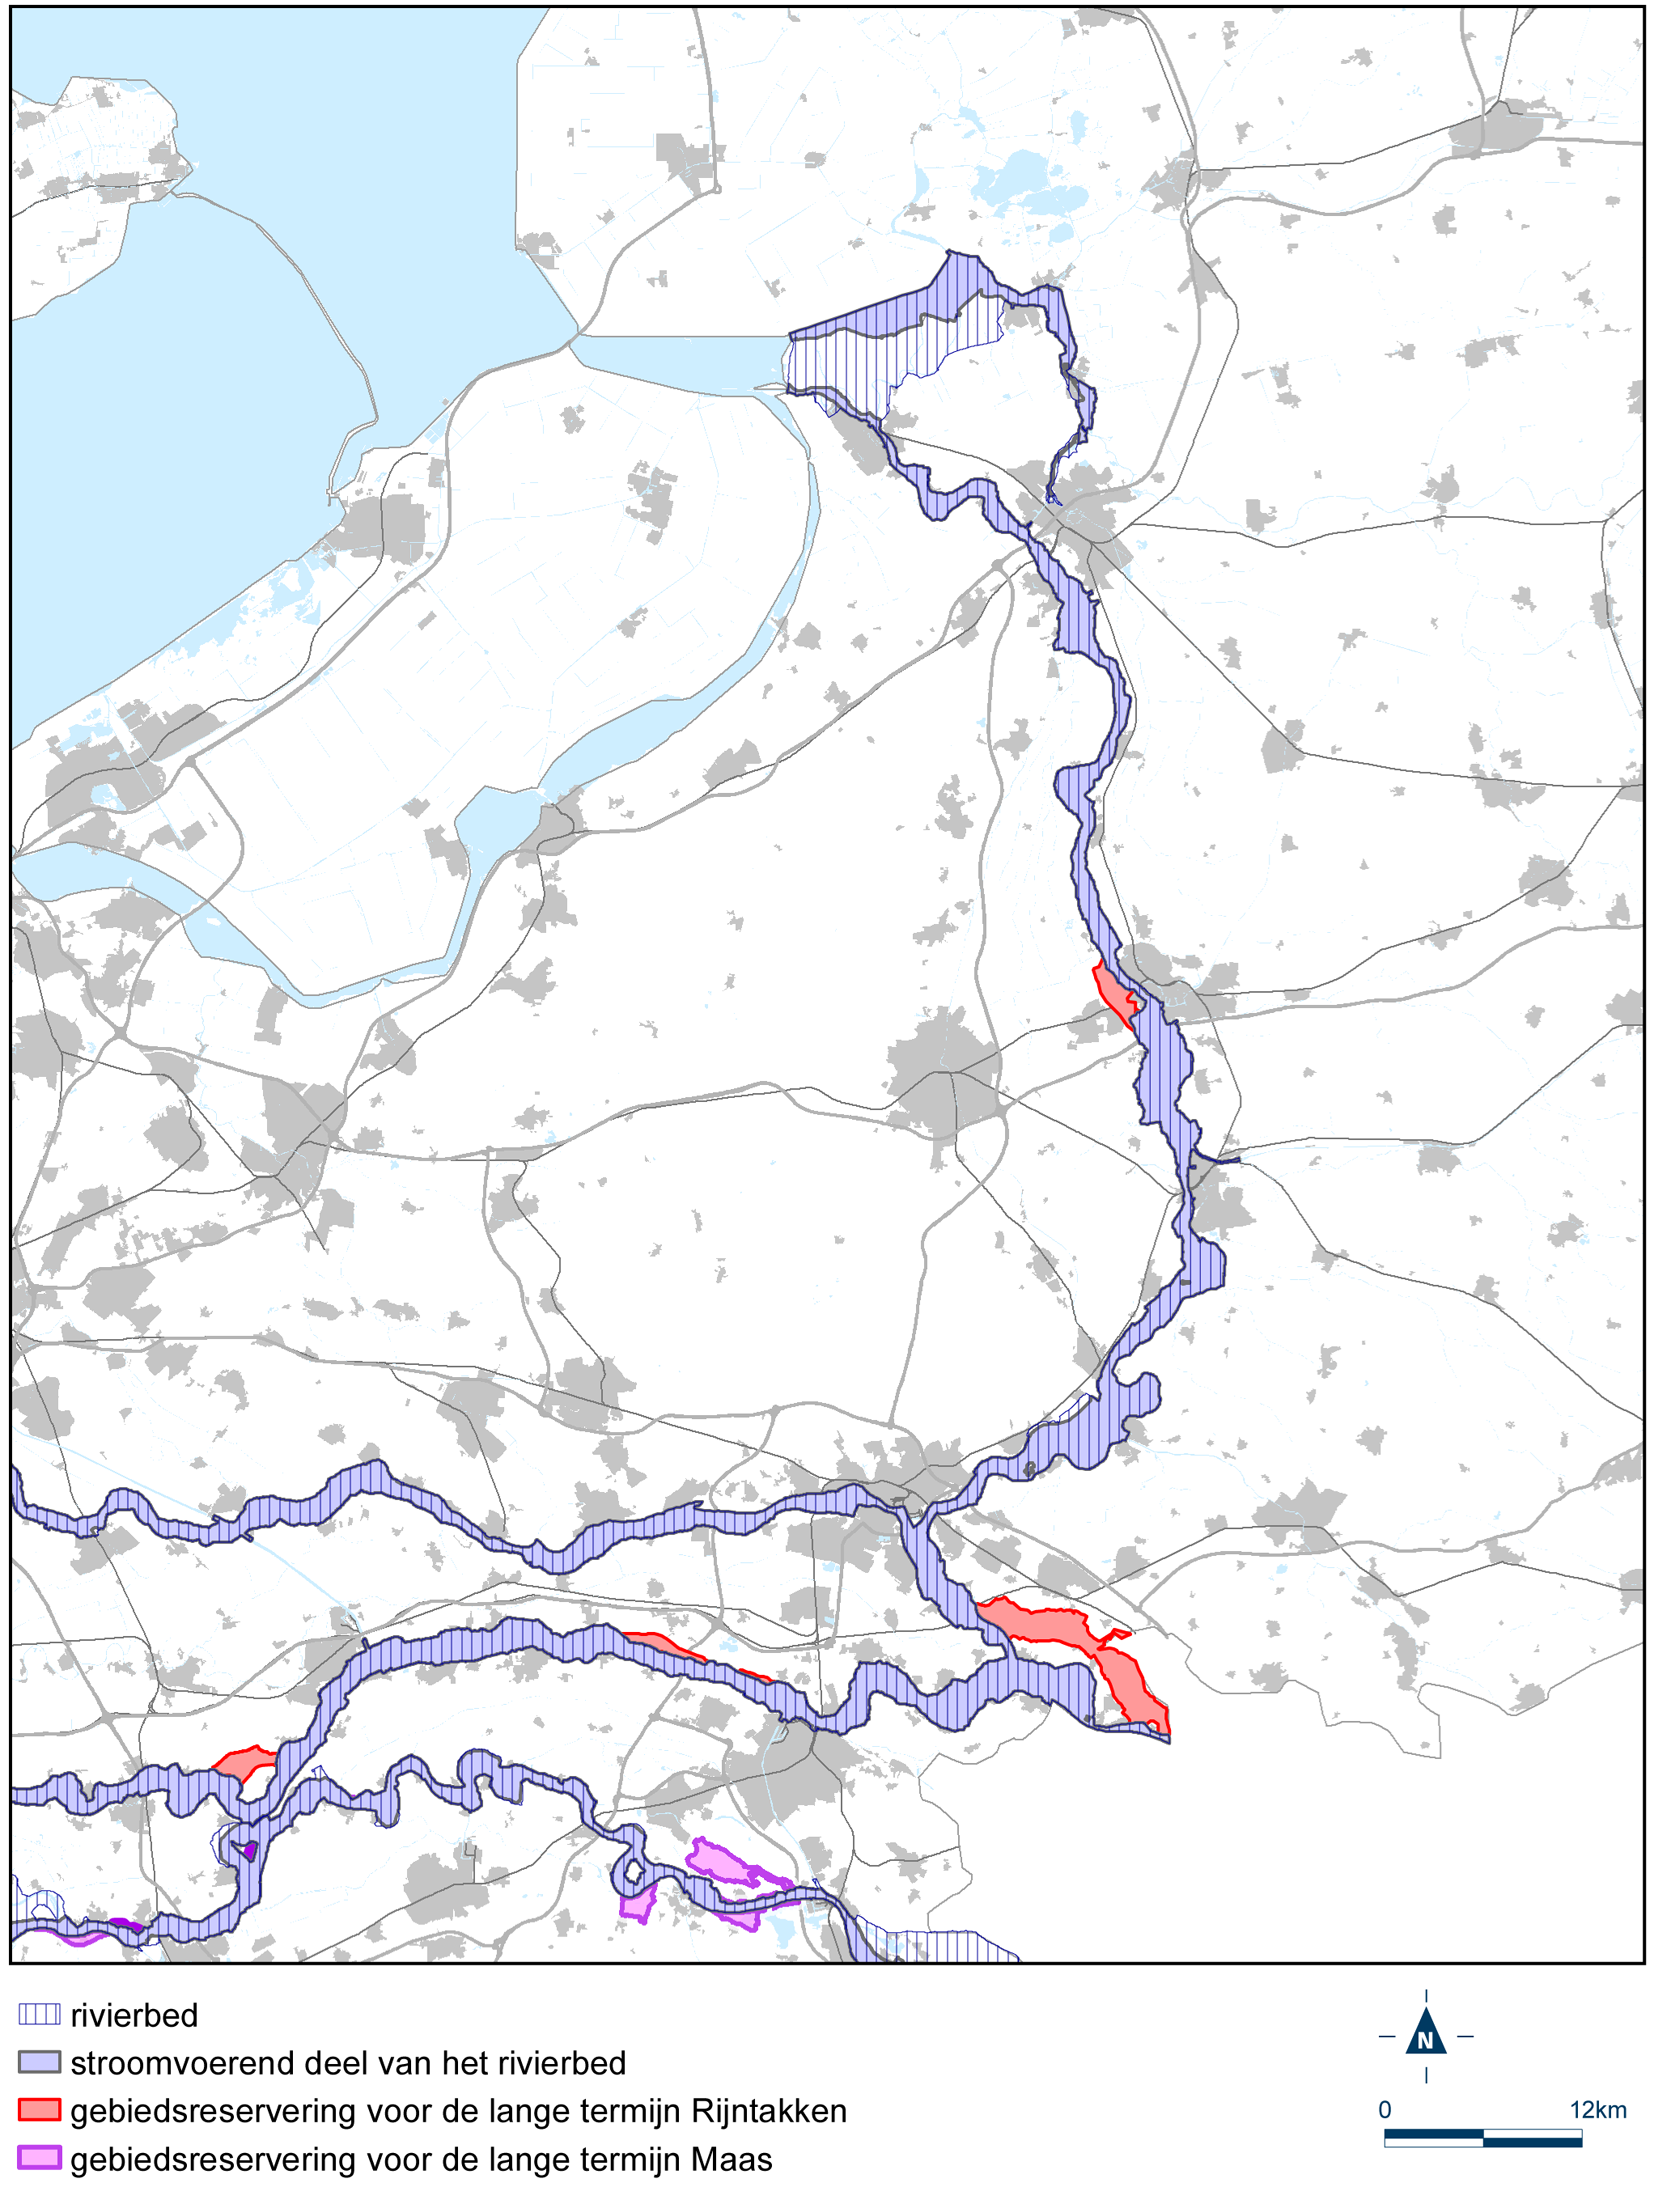 Detailkaart grote rivieren noord